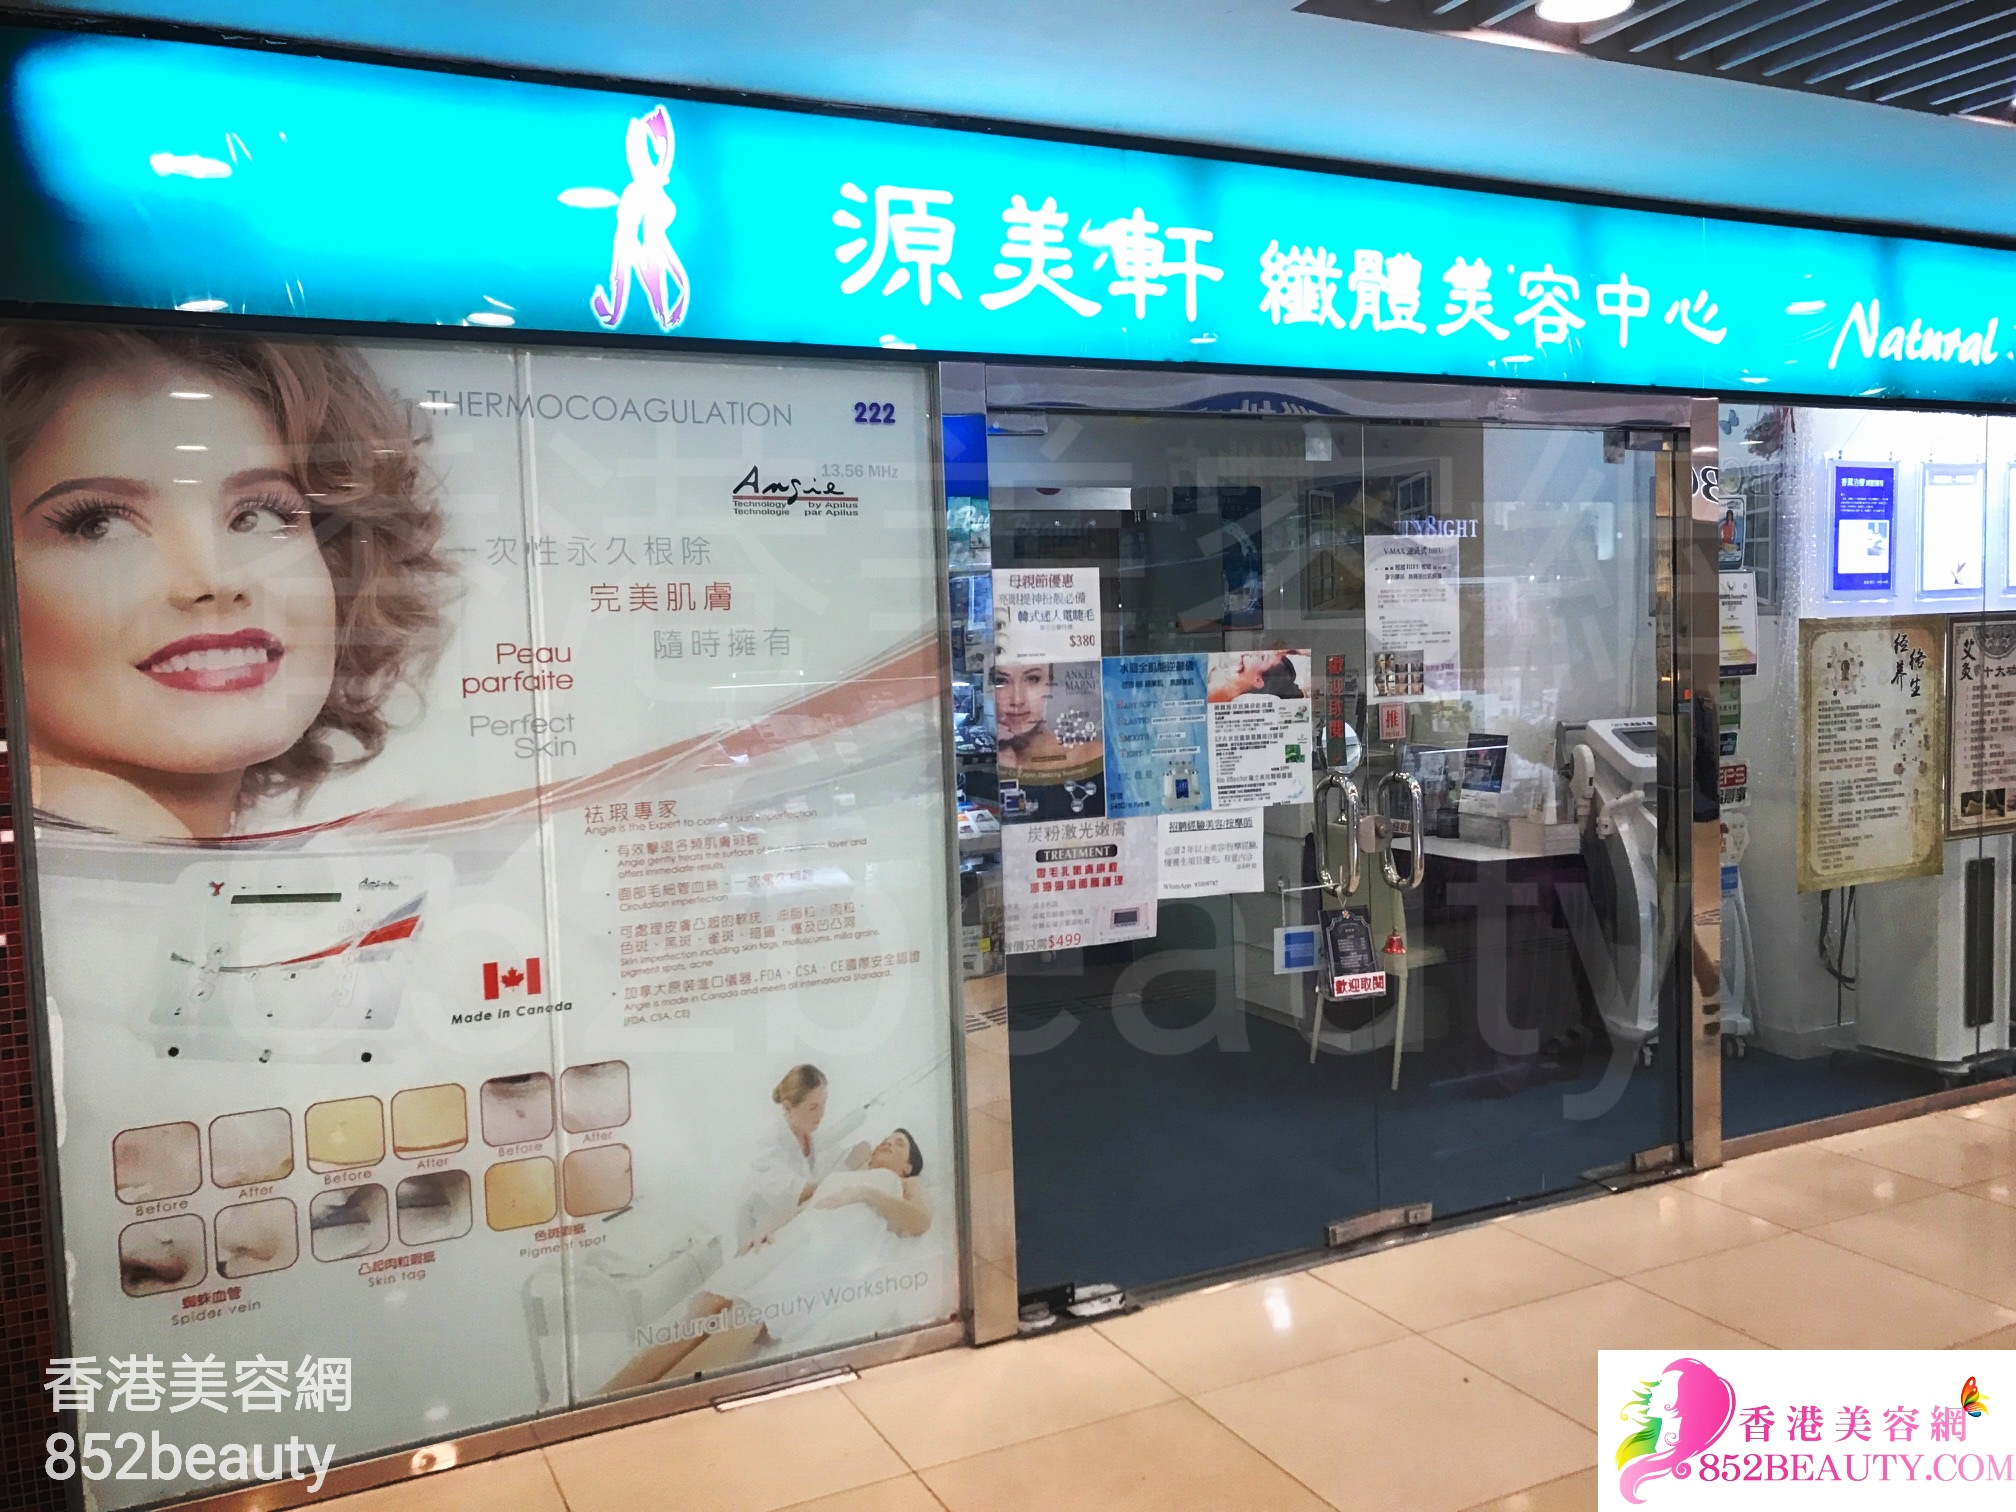 香港美容網 Hong Kong Beauty Salon 美容院 / 美容師: 源美軒纖體美容中心